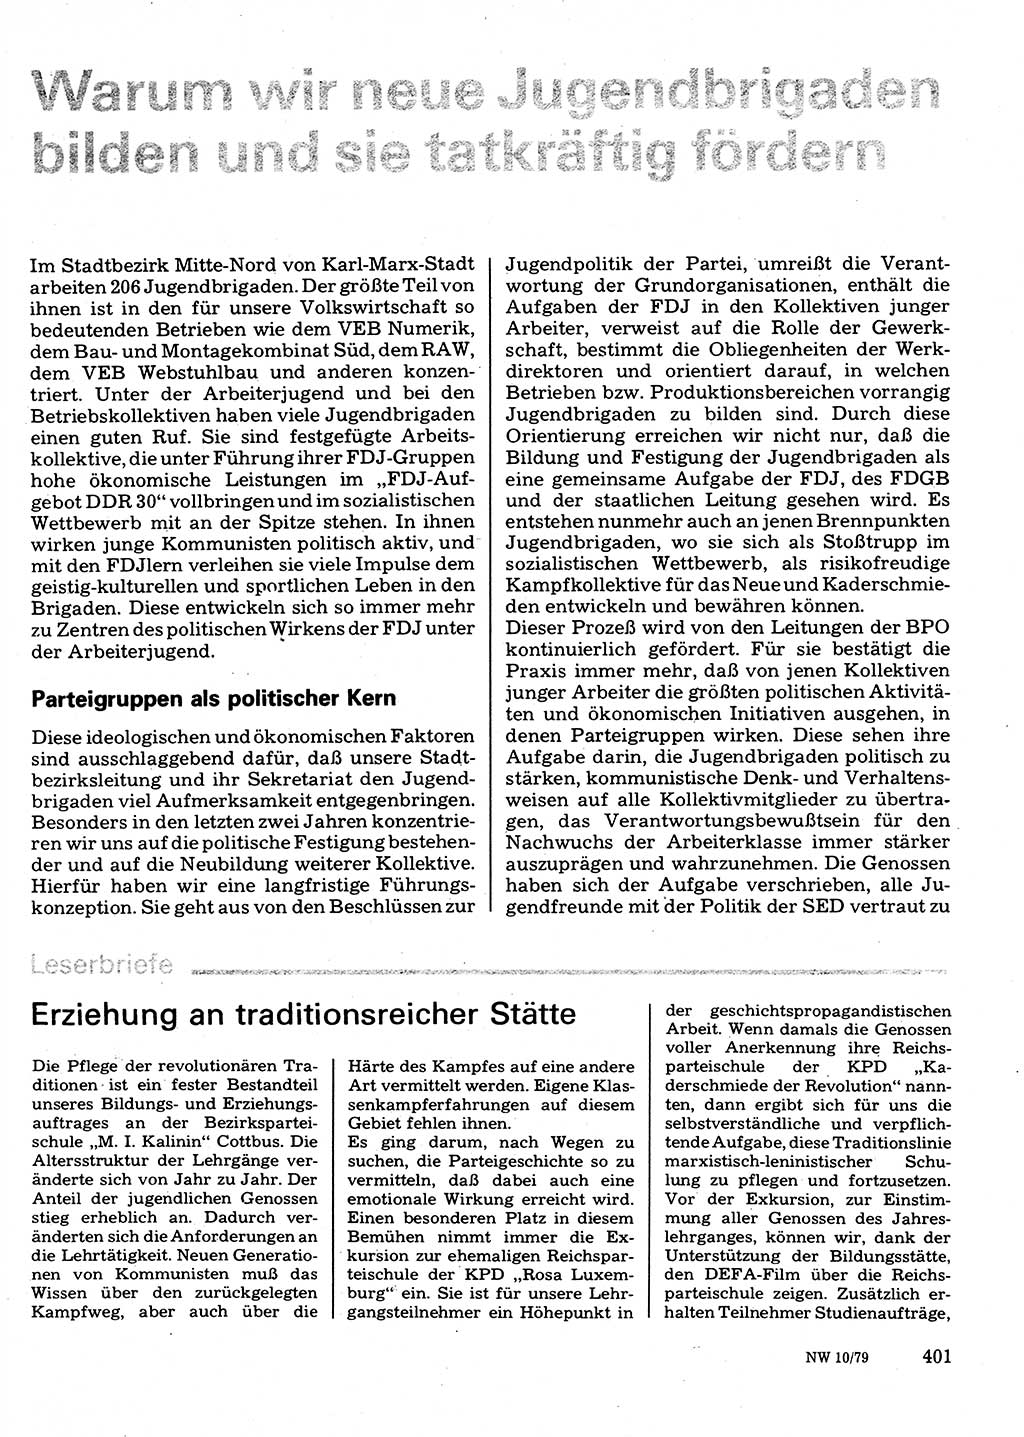 Neuer Weg (NW), Organ des Zentralkomitees (ZK) der SED (Sozialistische Einheitspartei Deutschlands) für Fragen des Parteilebens, 34. Jahrgang [Deutsche Demokratische Republik (DDR)] 1979, Seite 401 (NW ZK SED DDR 1979, S. 401)